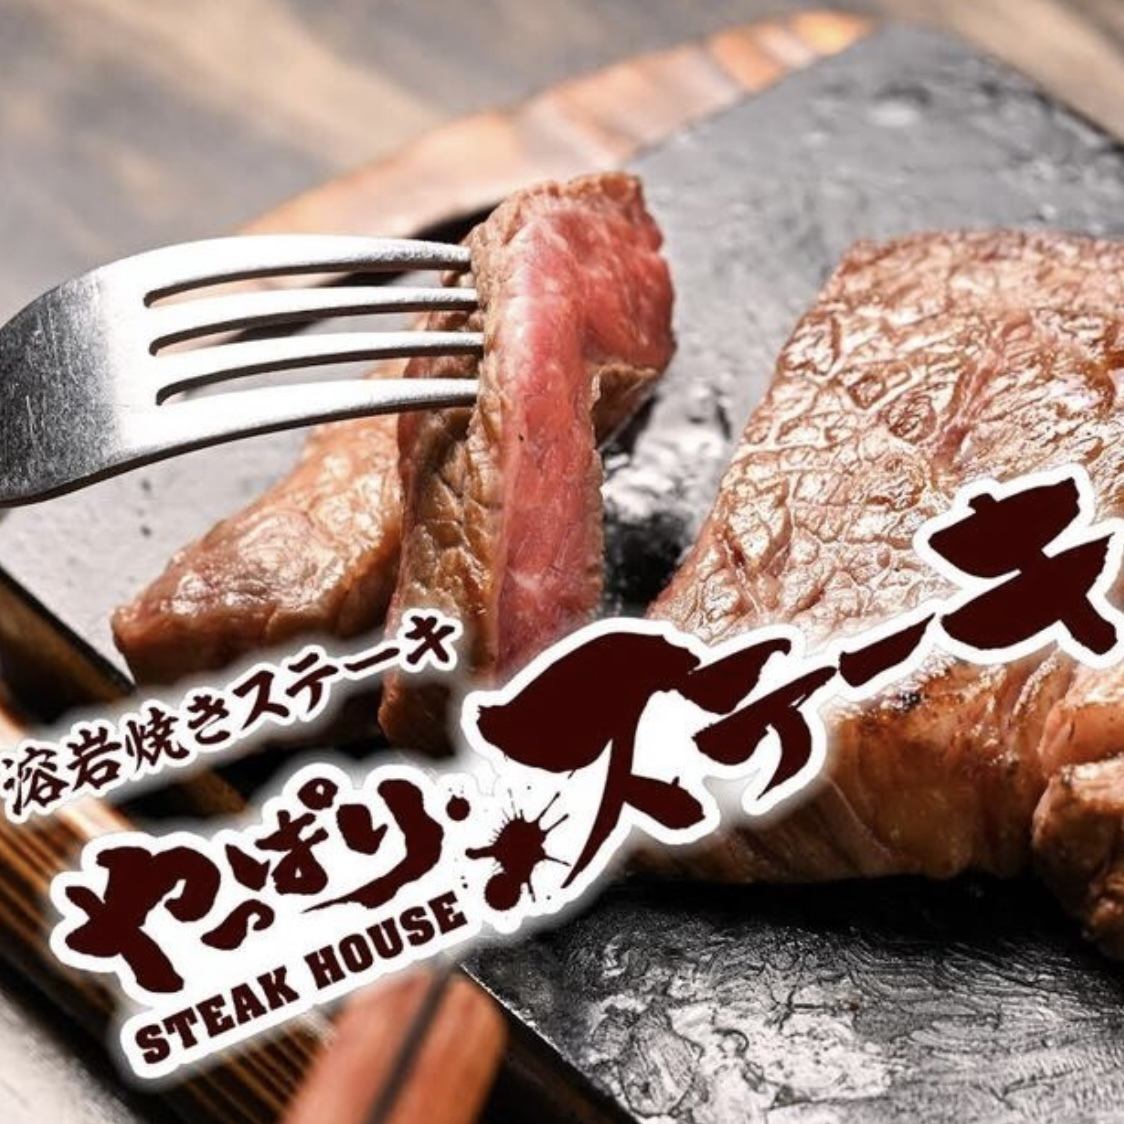 畢竟，在神田也能買到講究牛排的美味和樂趣的牛排！